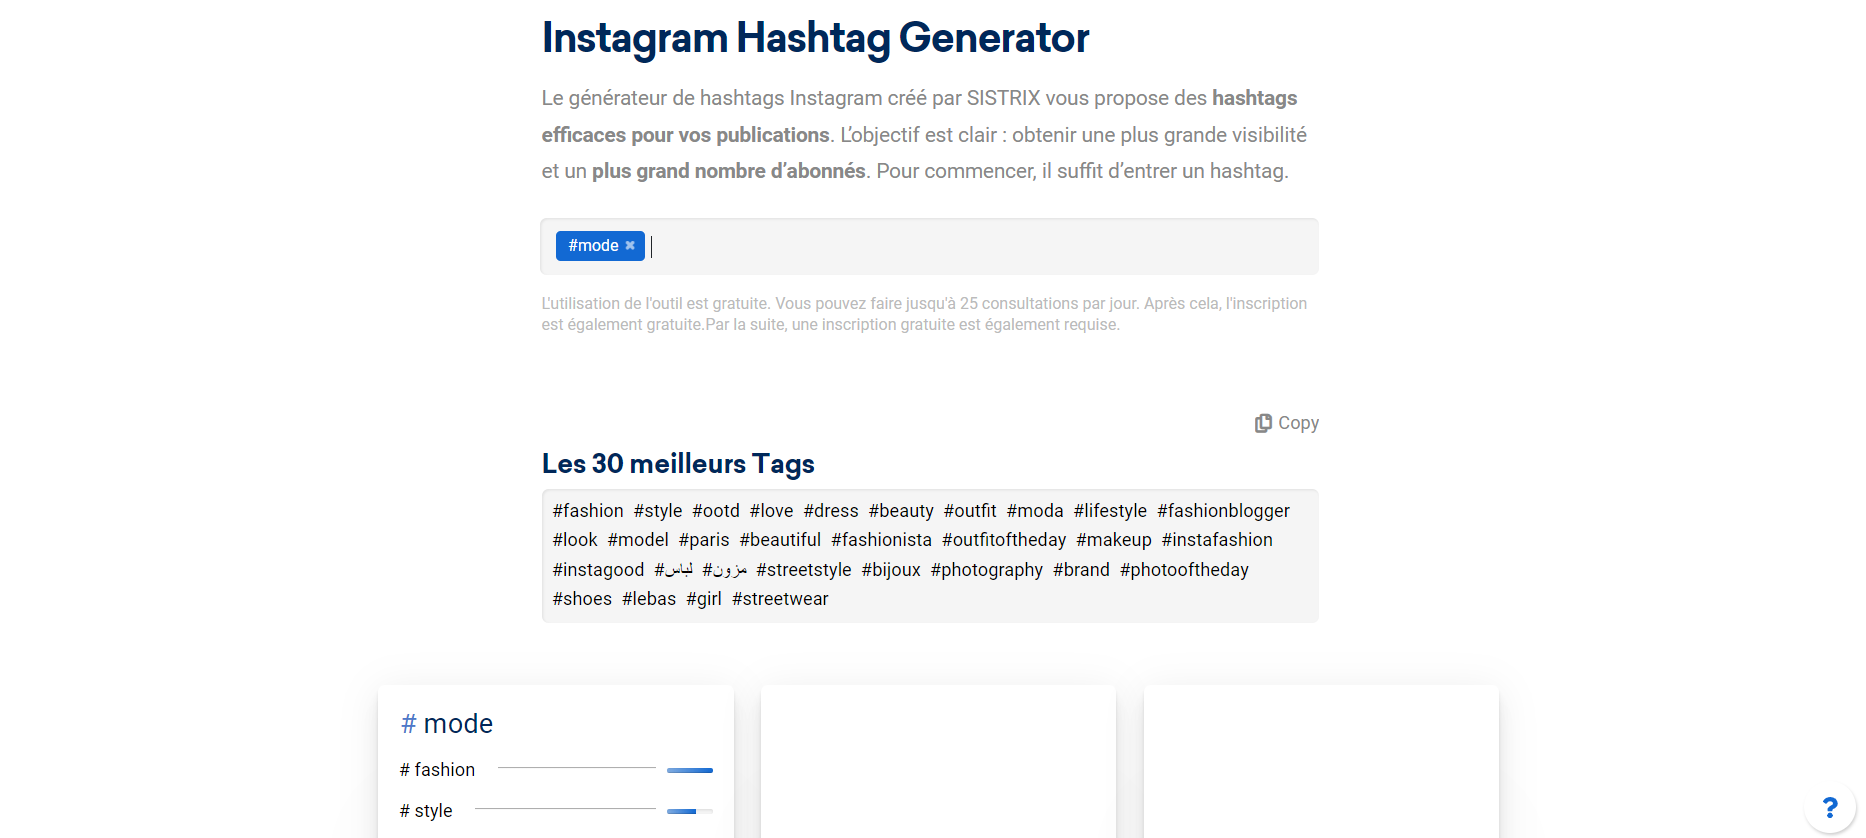 générateur de hashtags Instagram créé par SISTRIX